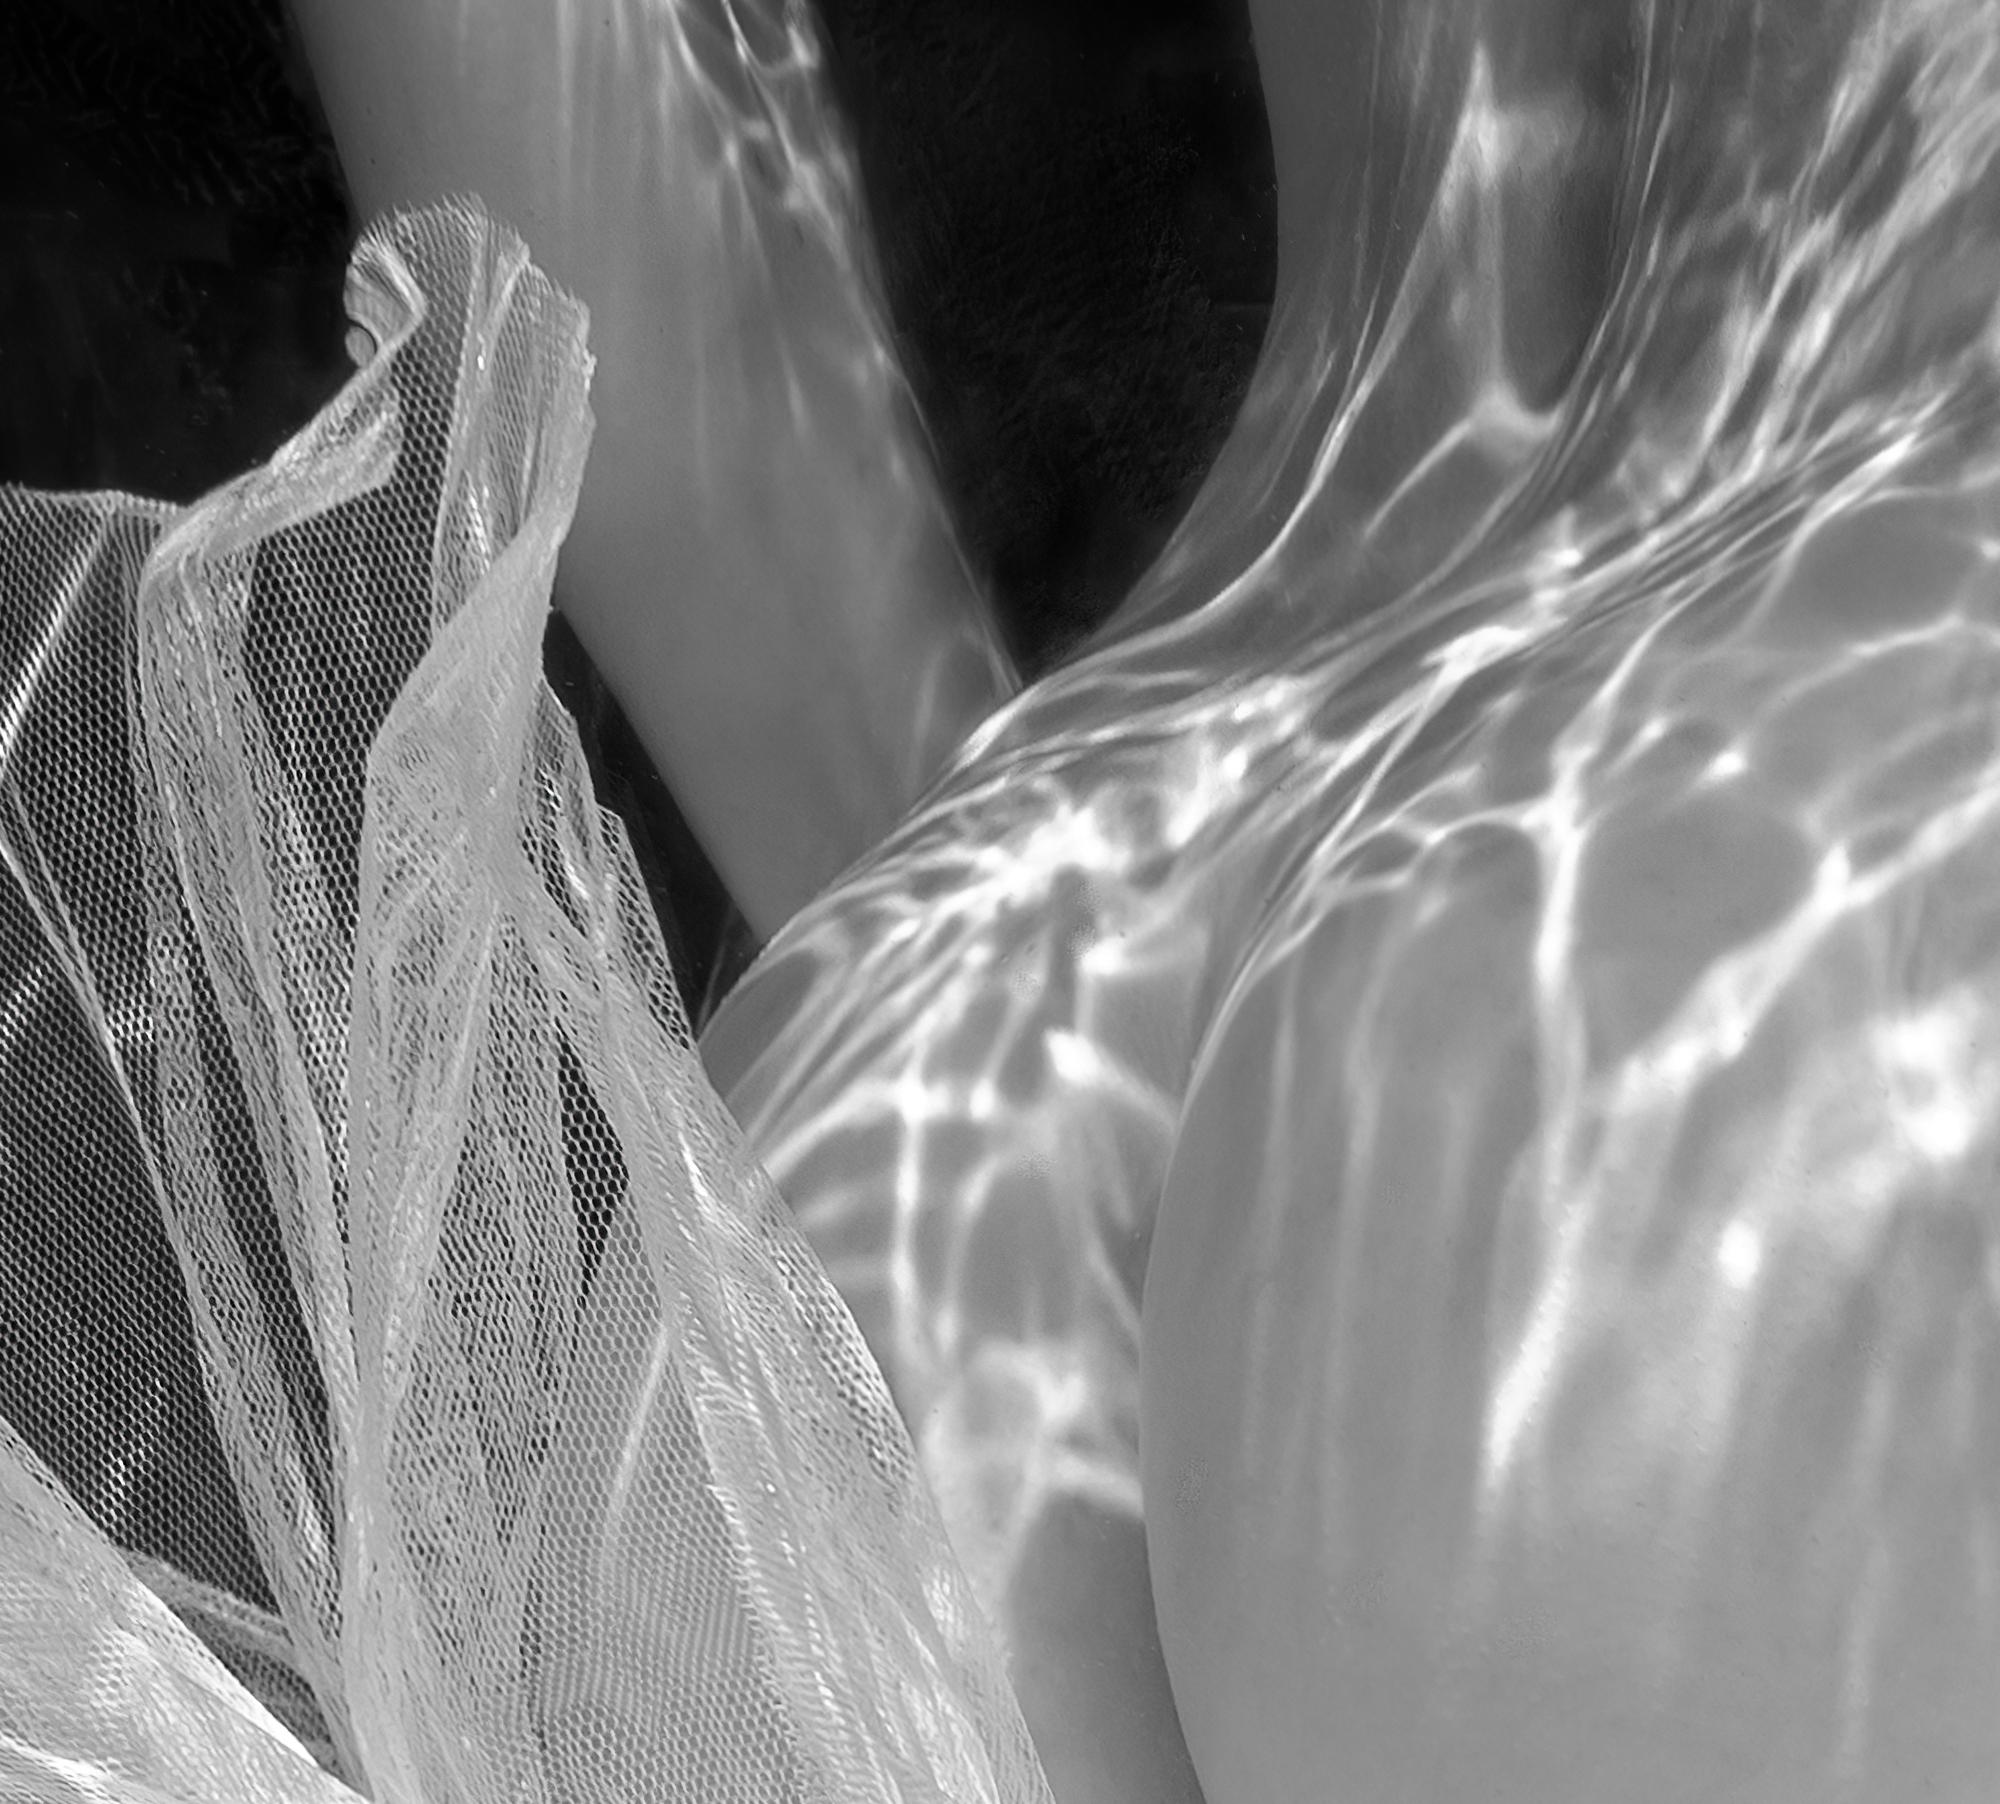 Jupe Tutu - photo de nu noir et blanc sous l'eau - imprimé sur aluminium 24